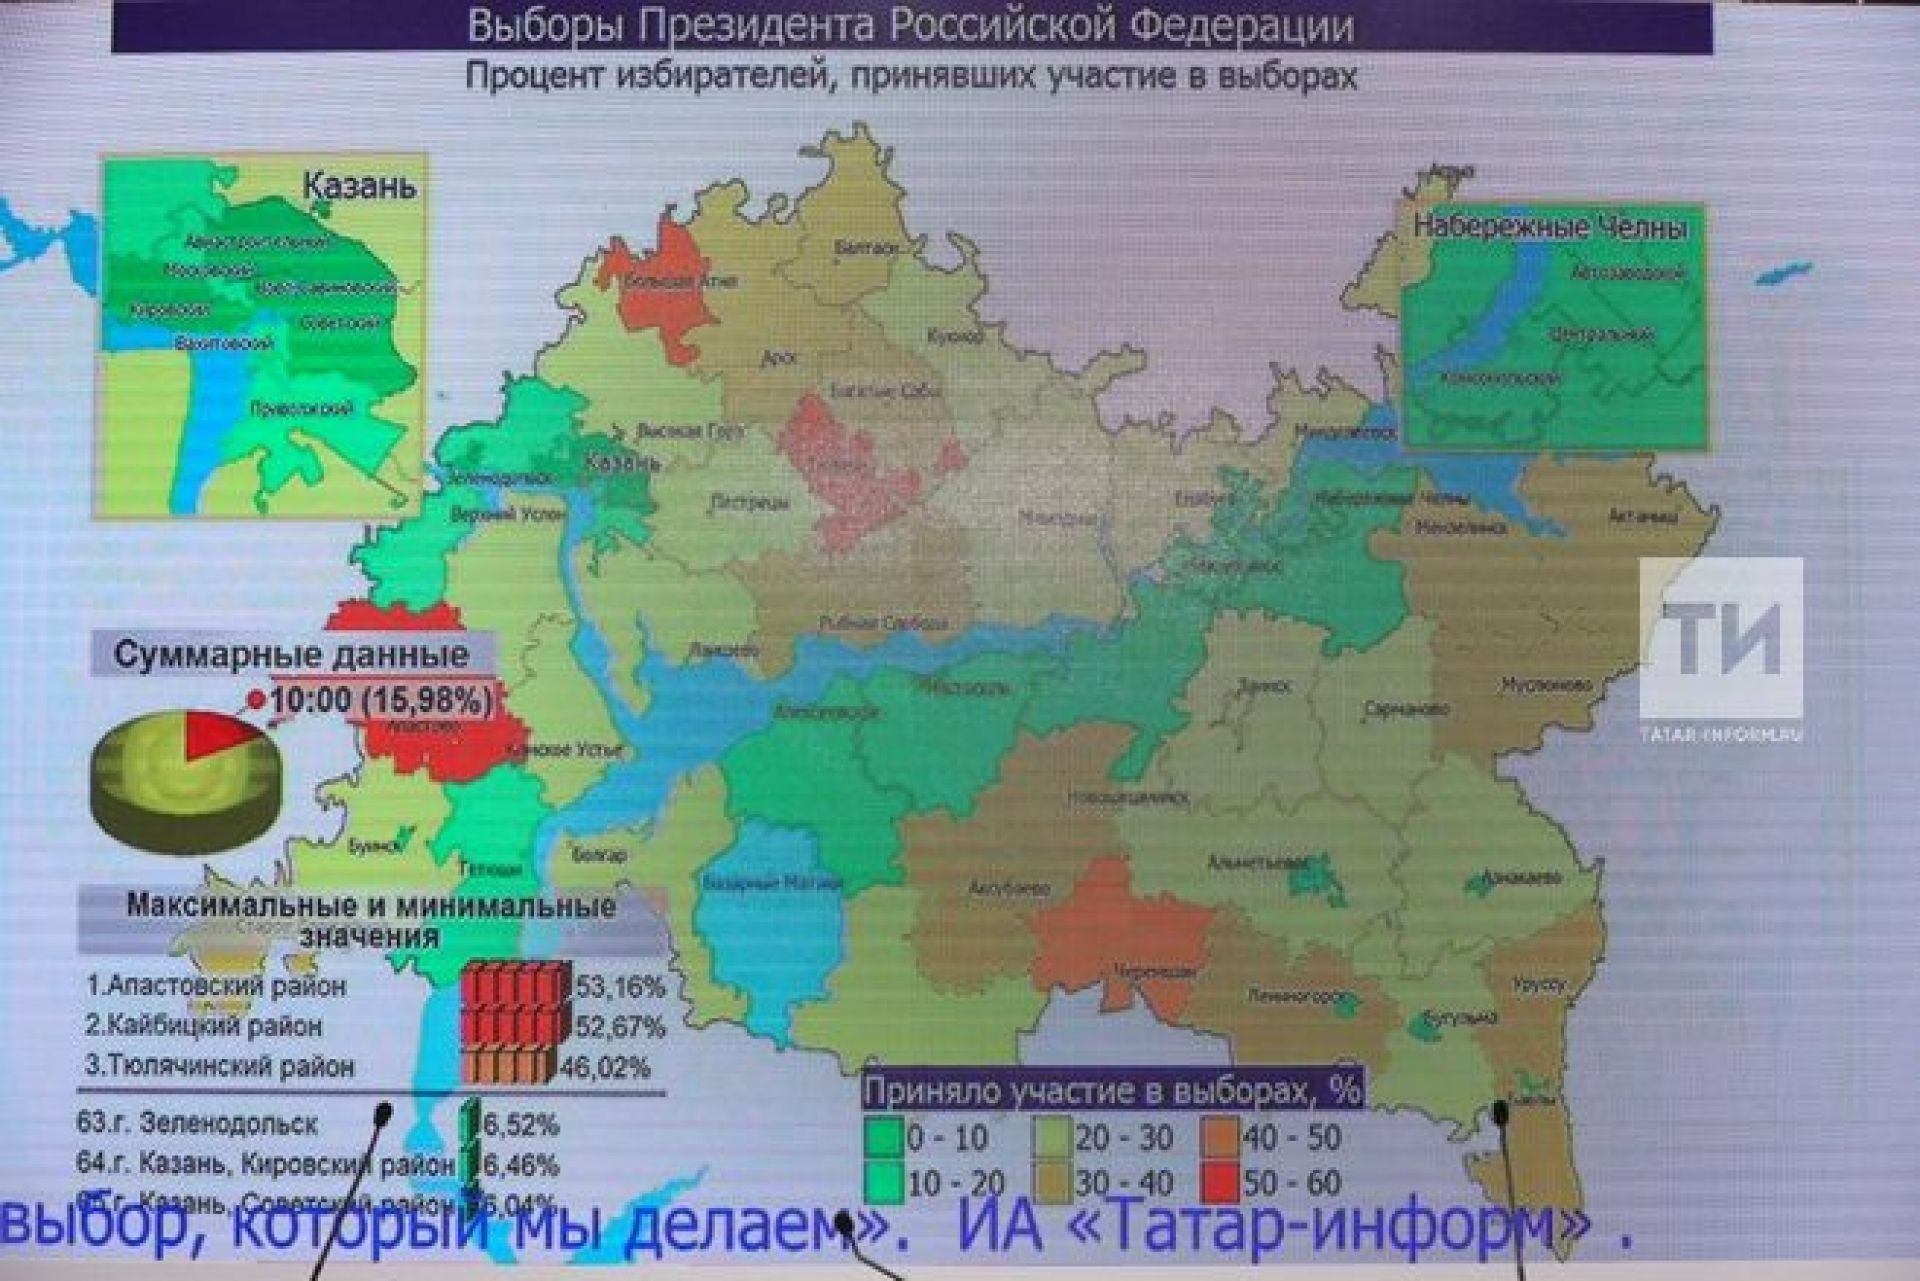 Процент голосования по регионам. Процент проголосовавших по регионам. Карта голосования в России. Выборы в Татарстане больше 100 процентов.